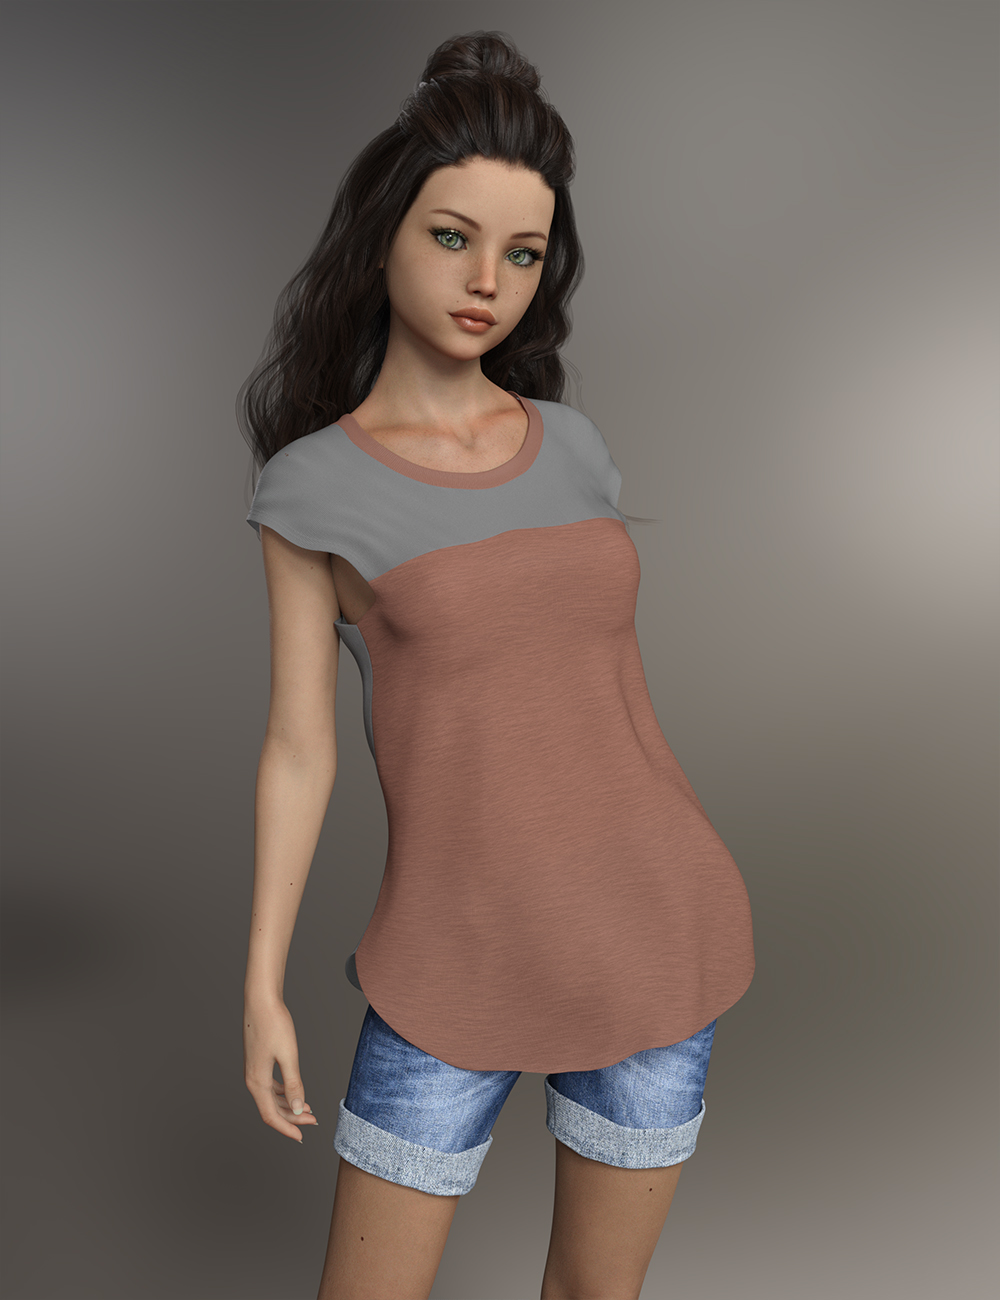 FWSA Willa HD for Teen Josie 8 by: Fred Winkler ArtSabby, 3D Models by Daz 3D